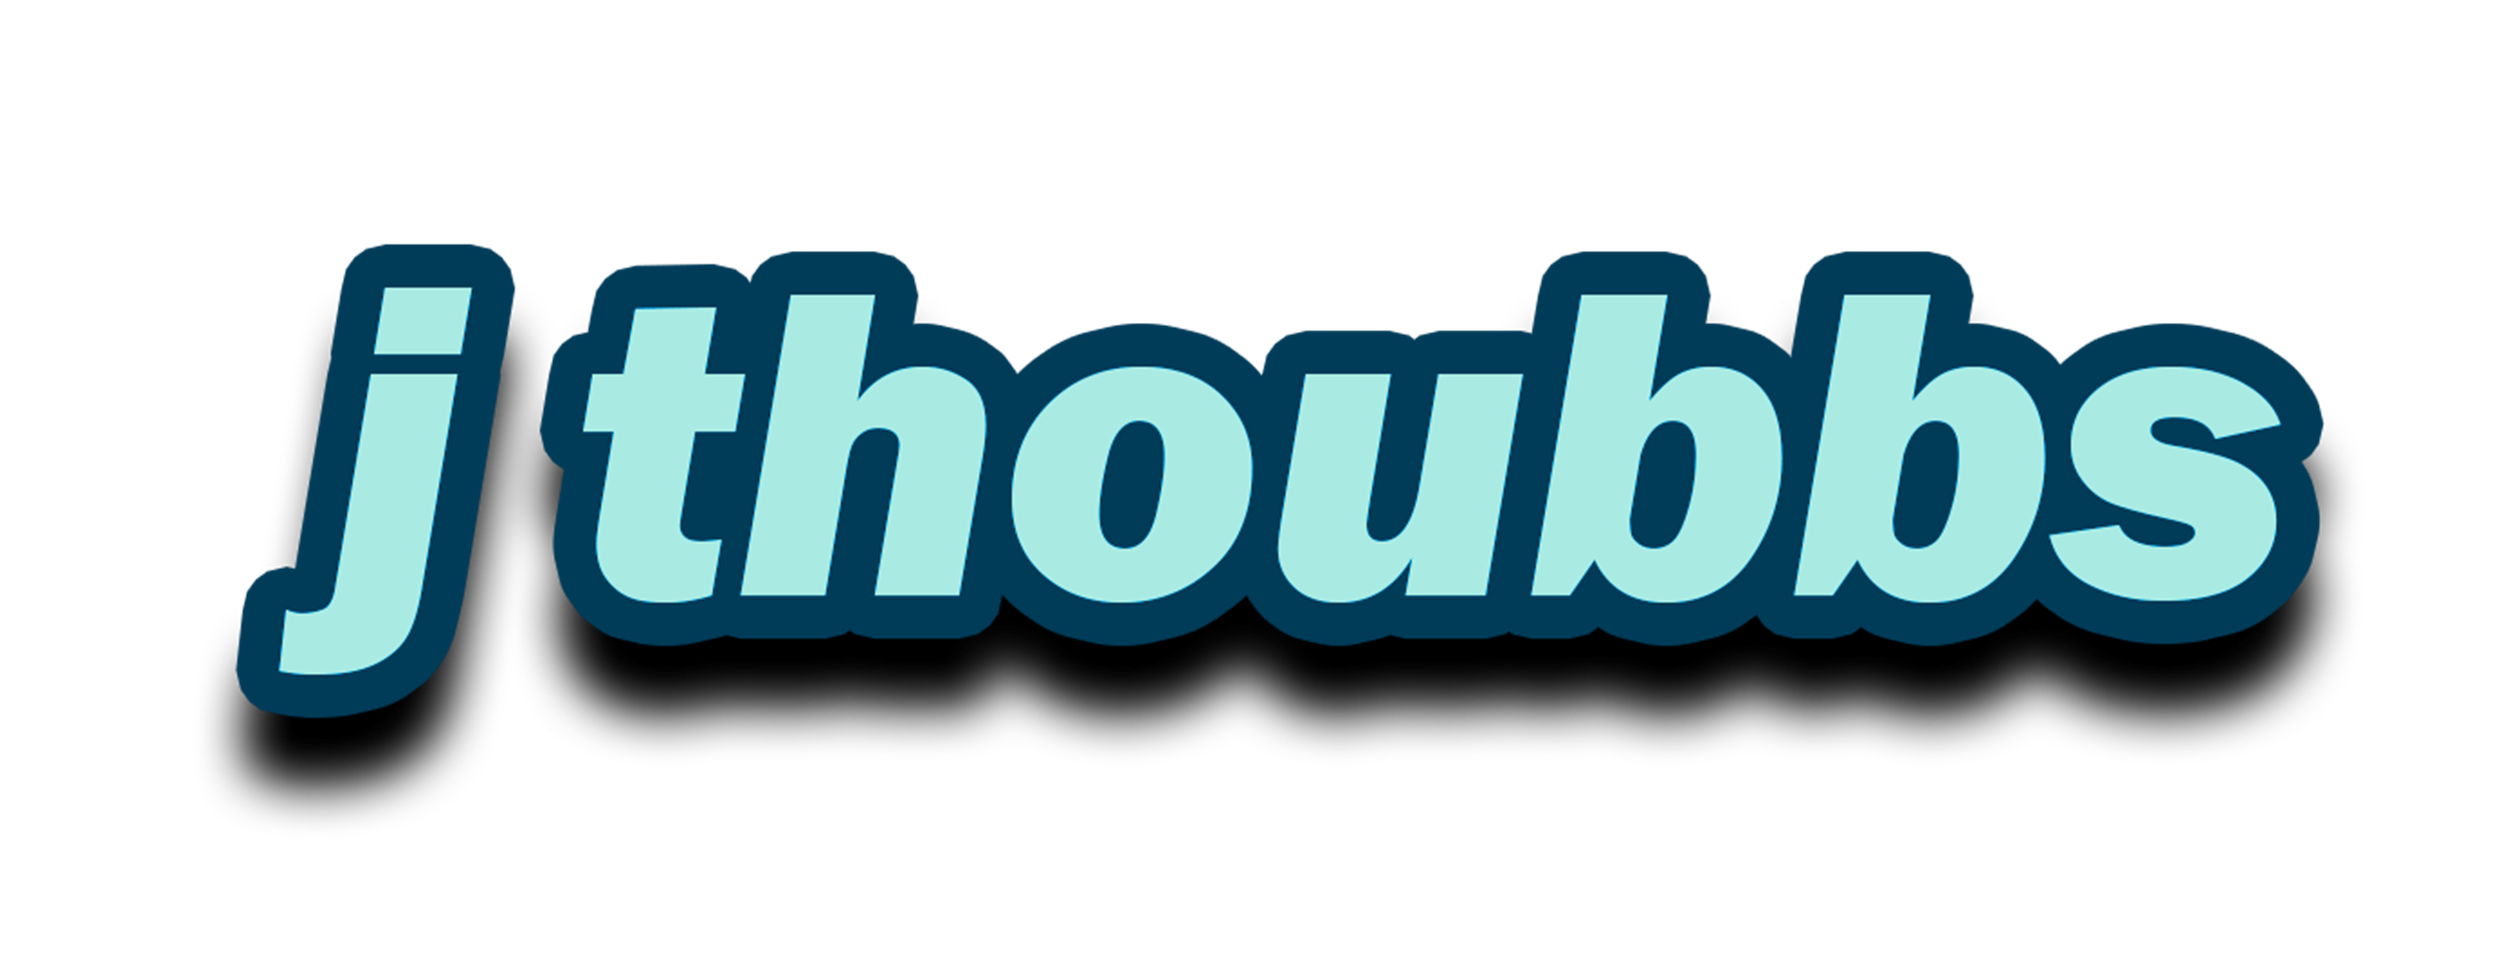 J Thoubbs